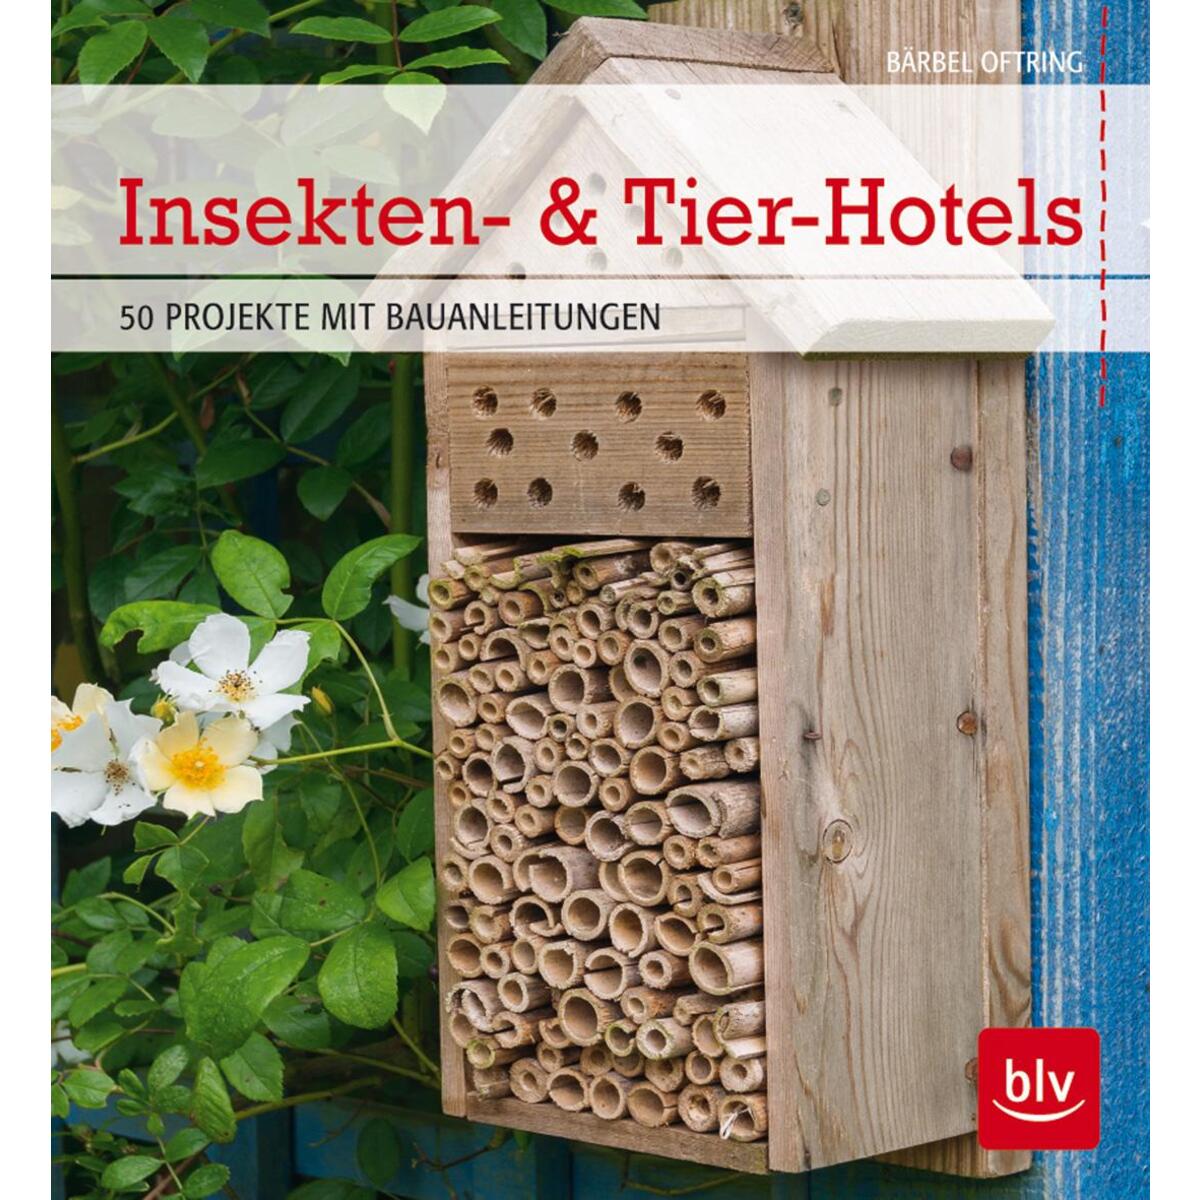 Insekten- & Tier-Hotels von Blv